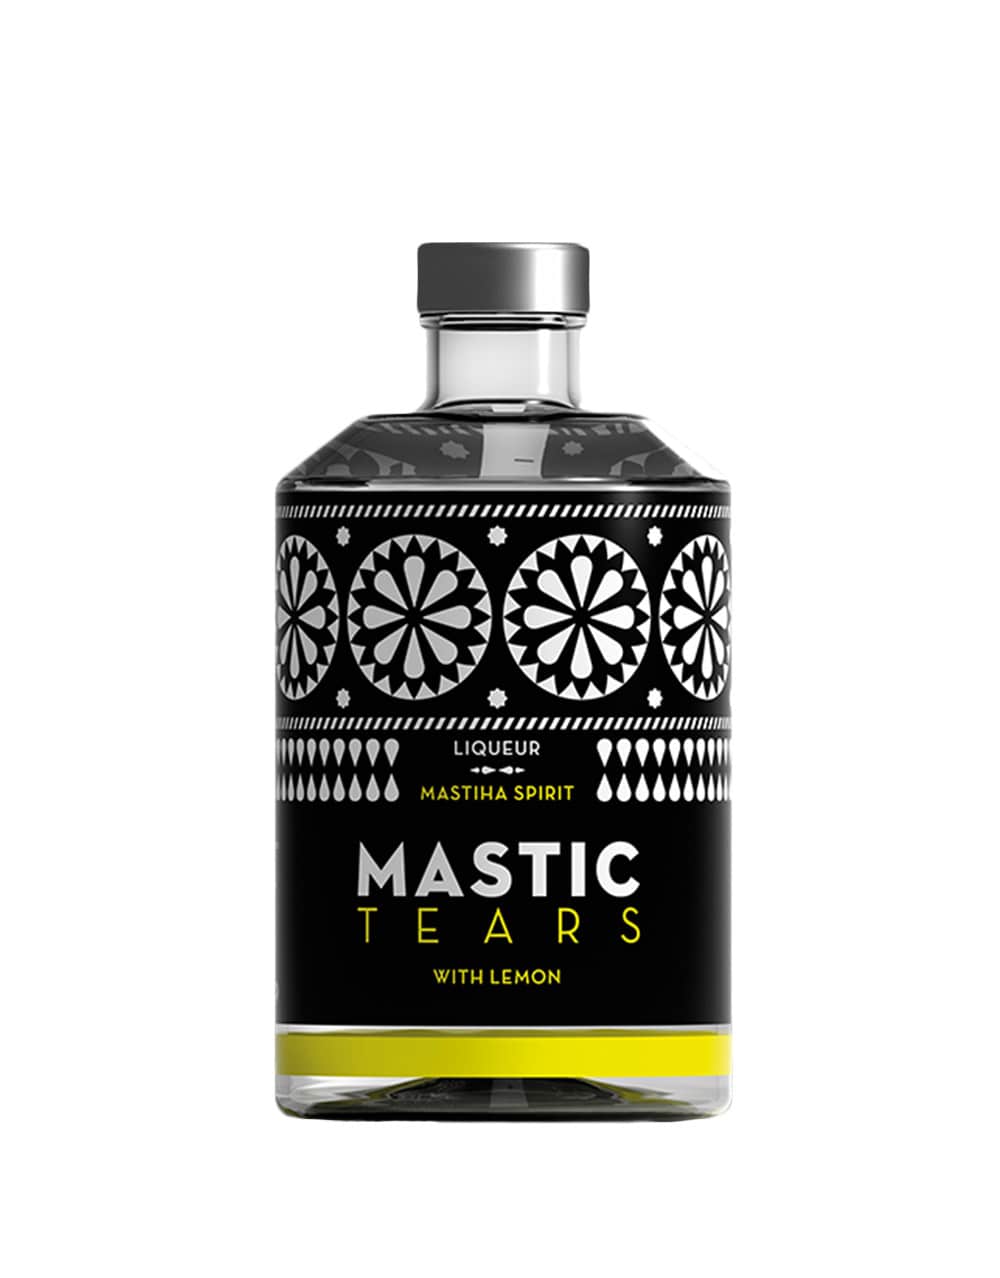 Mastic Tears Lemon Mastiha Spirit Liqueur